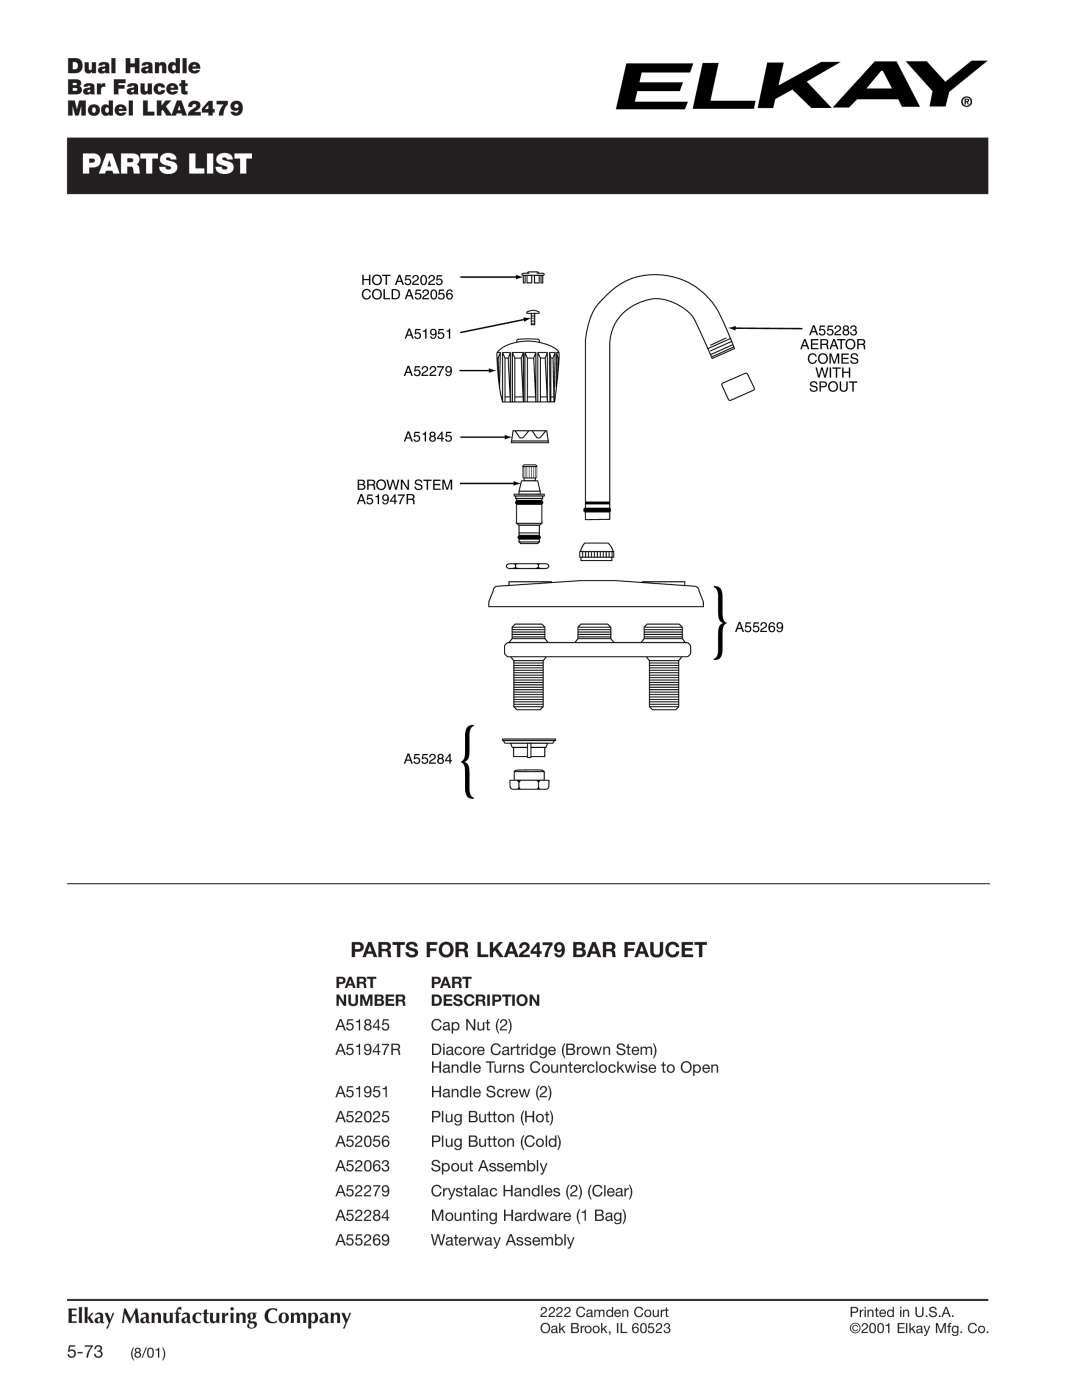 Elkay specifications Parts List, PARTS FOR LKA2479 BAR FAUCET, Number, Description, Dual Handle Bar Faucet Model LKA2479 